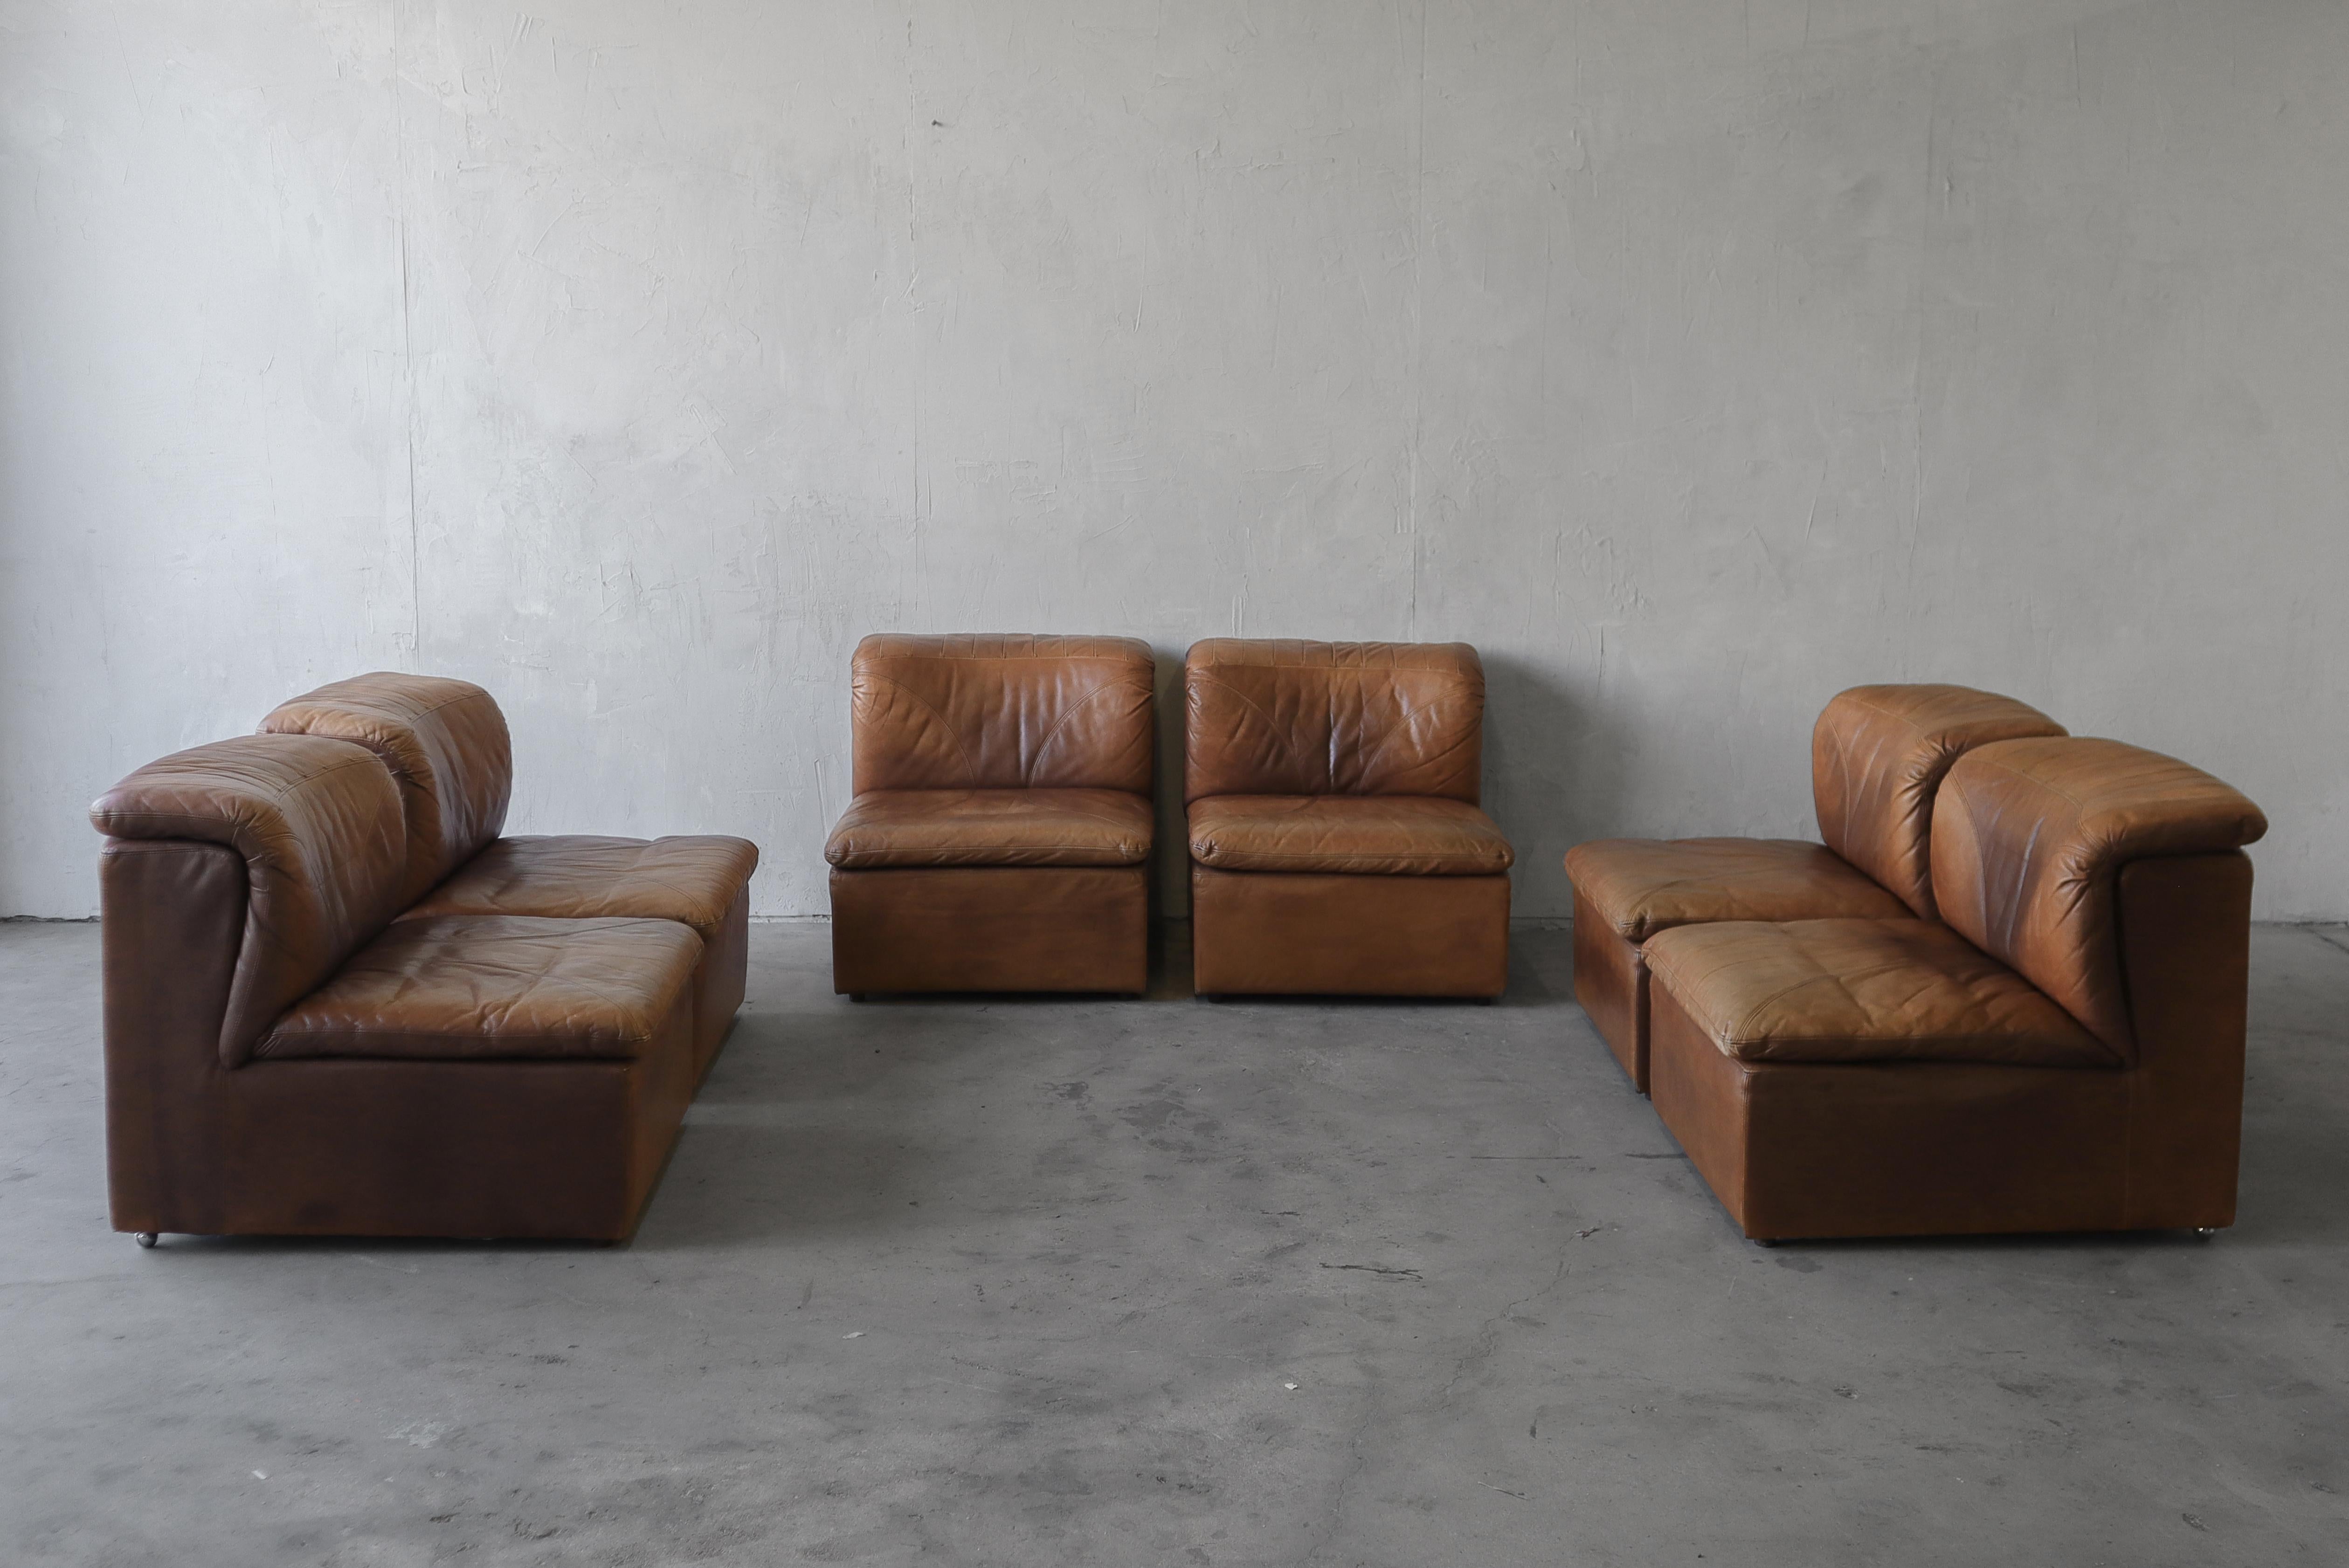 Dieses 6-teilige, modulare Sektionssofa von De Sede ist die Perfektion des patinierten Leders der 1970er Jahre. Die Möglichkeiten für dieses Set sind wirklich endlos. Verwenden Sie es als ein langes Sofa, 2 passende 3-Sitzer-Sofas, ein 4-Sitzer-Sofa